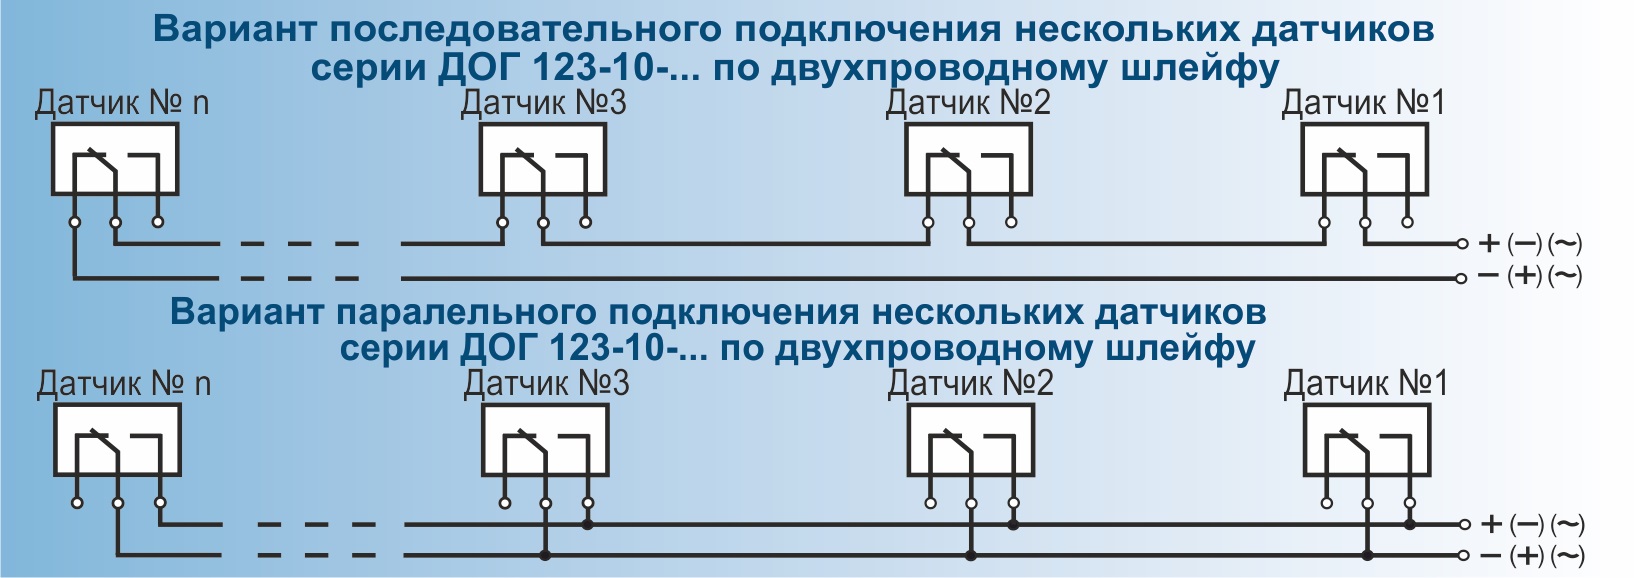 Вариант подключения нескольких датчиков ДОГ-123-10 по двухпроводному шлейфу